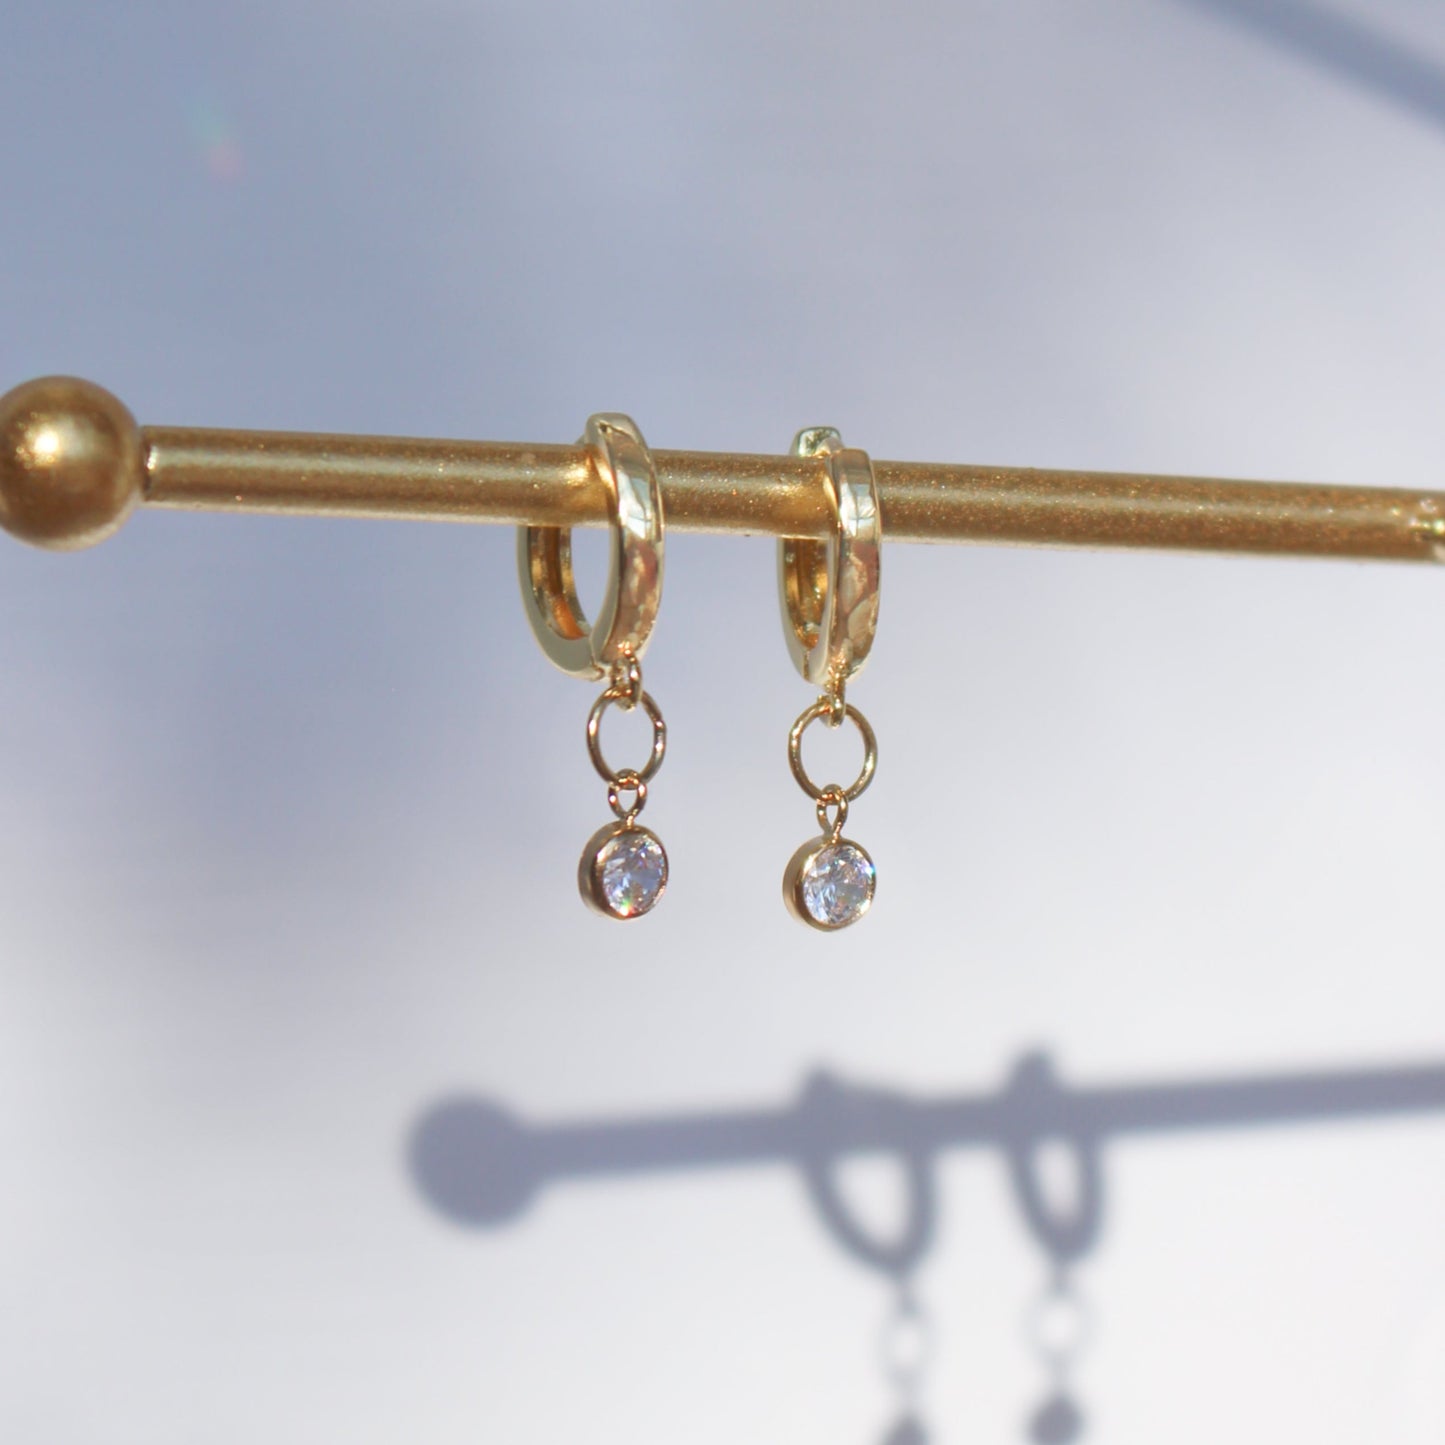 Boucles d'oreilles remplies d'or pendantes Huggies | Zircon scintillant 4mm | Cadeau pour les femmes